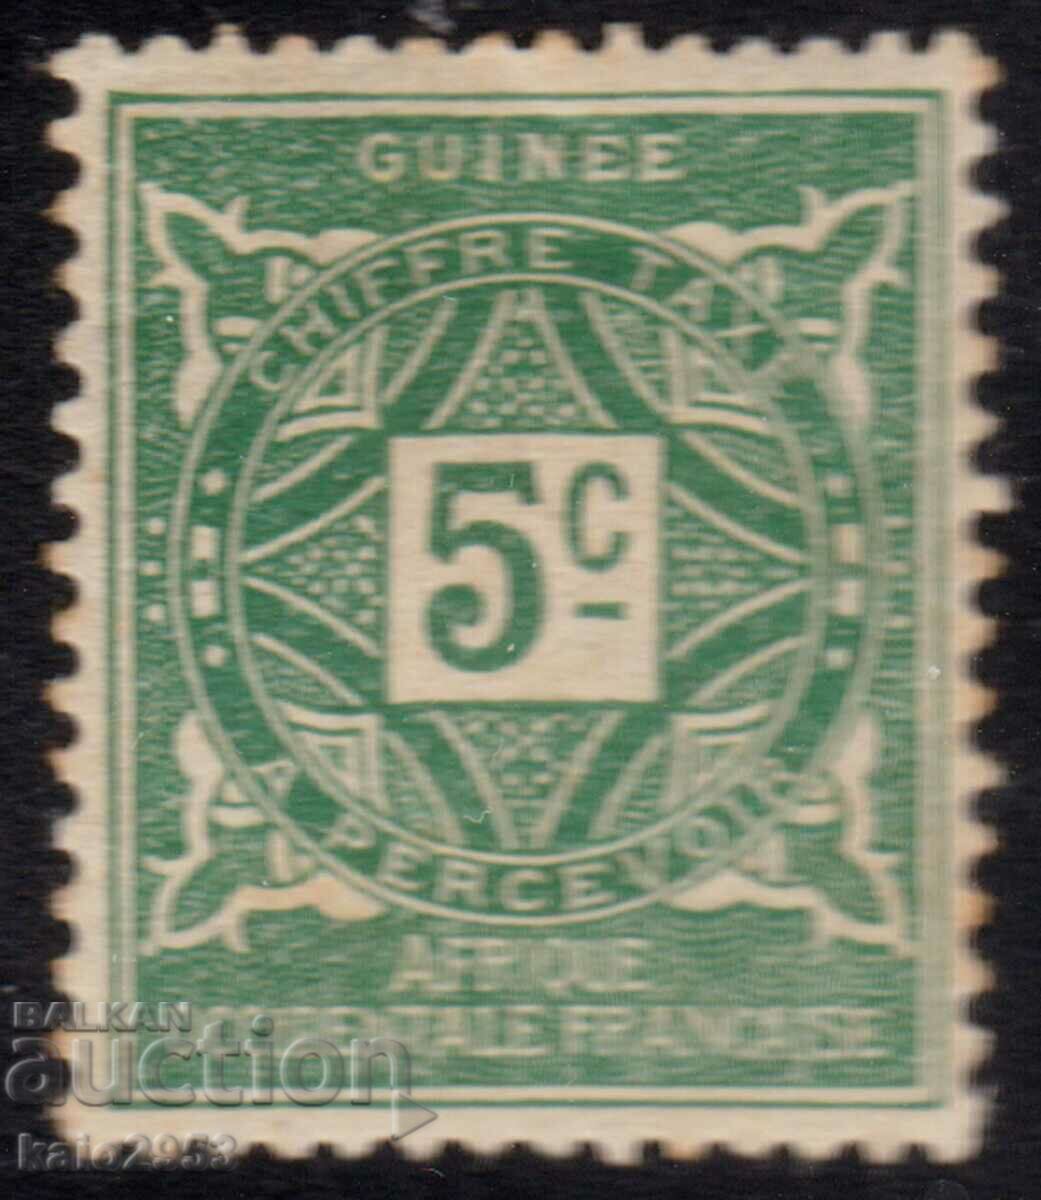 Γαλλική Γουινέα -1914-Επιπλέον, MLH